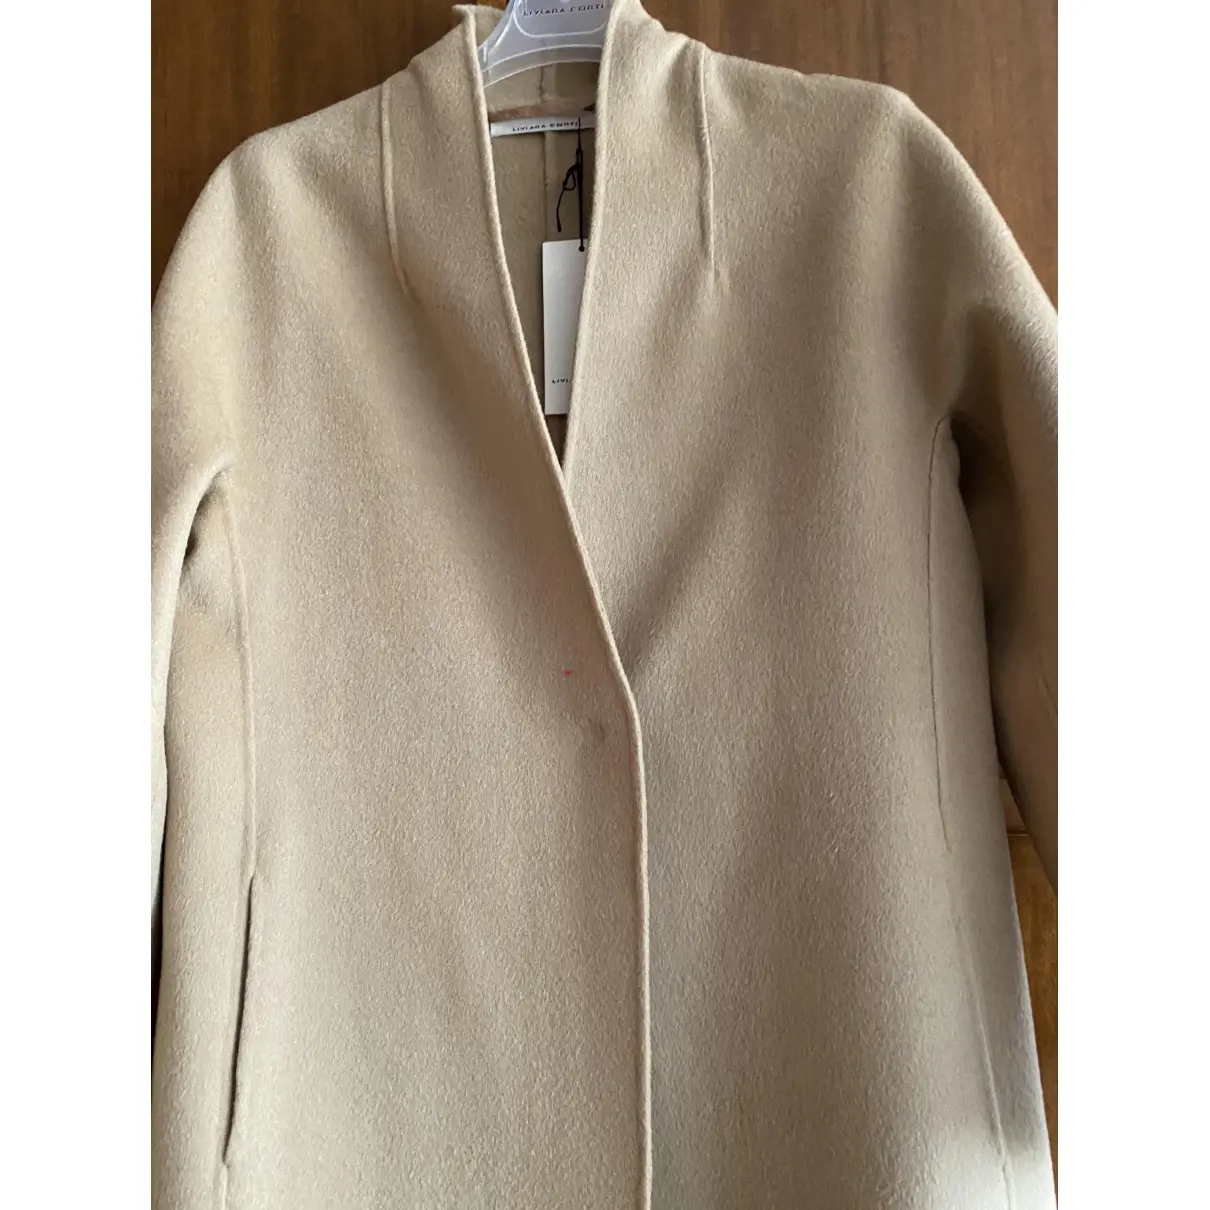 Wool coat Liviana Conti